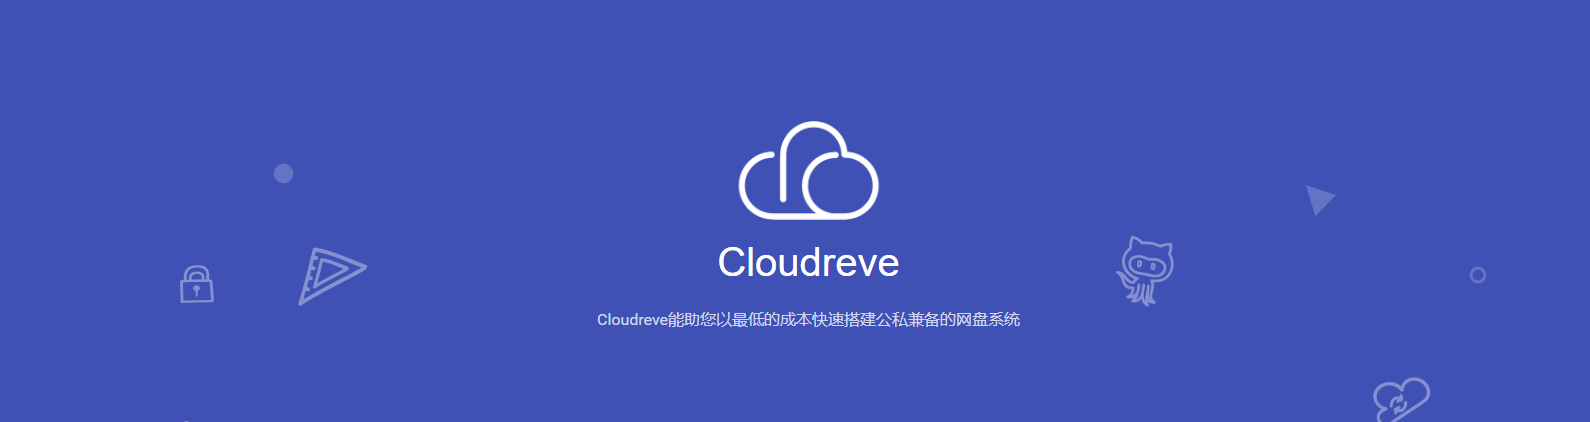 宝塔面板Cloudreve个人网盘搭建教程，Cloudreve - 部署公私兼备的网盘系统